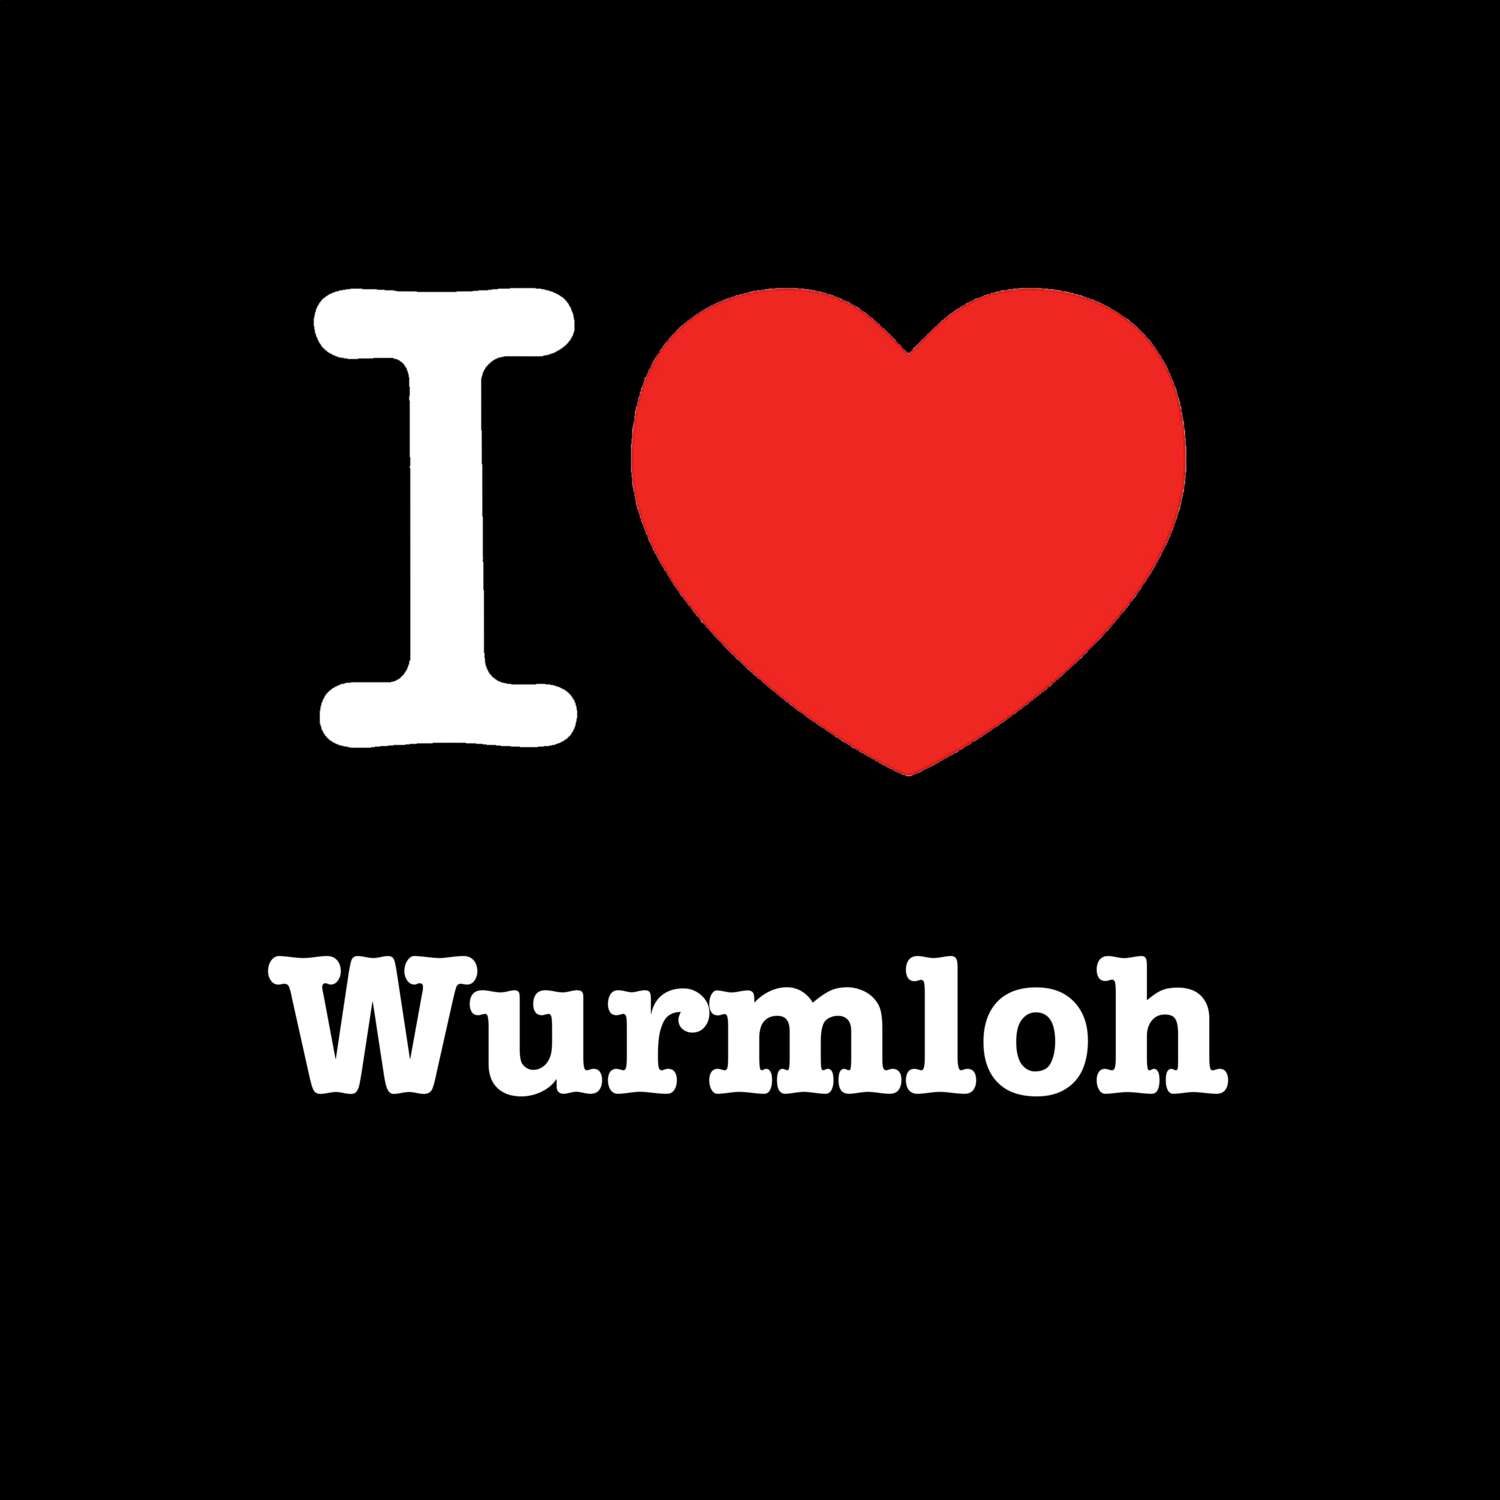 Wurmloh T-Shirt »I love«